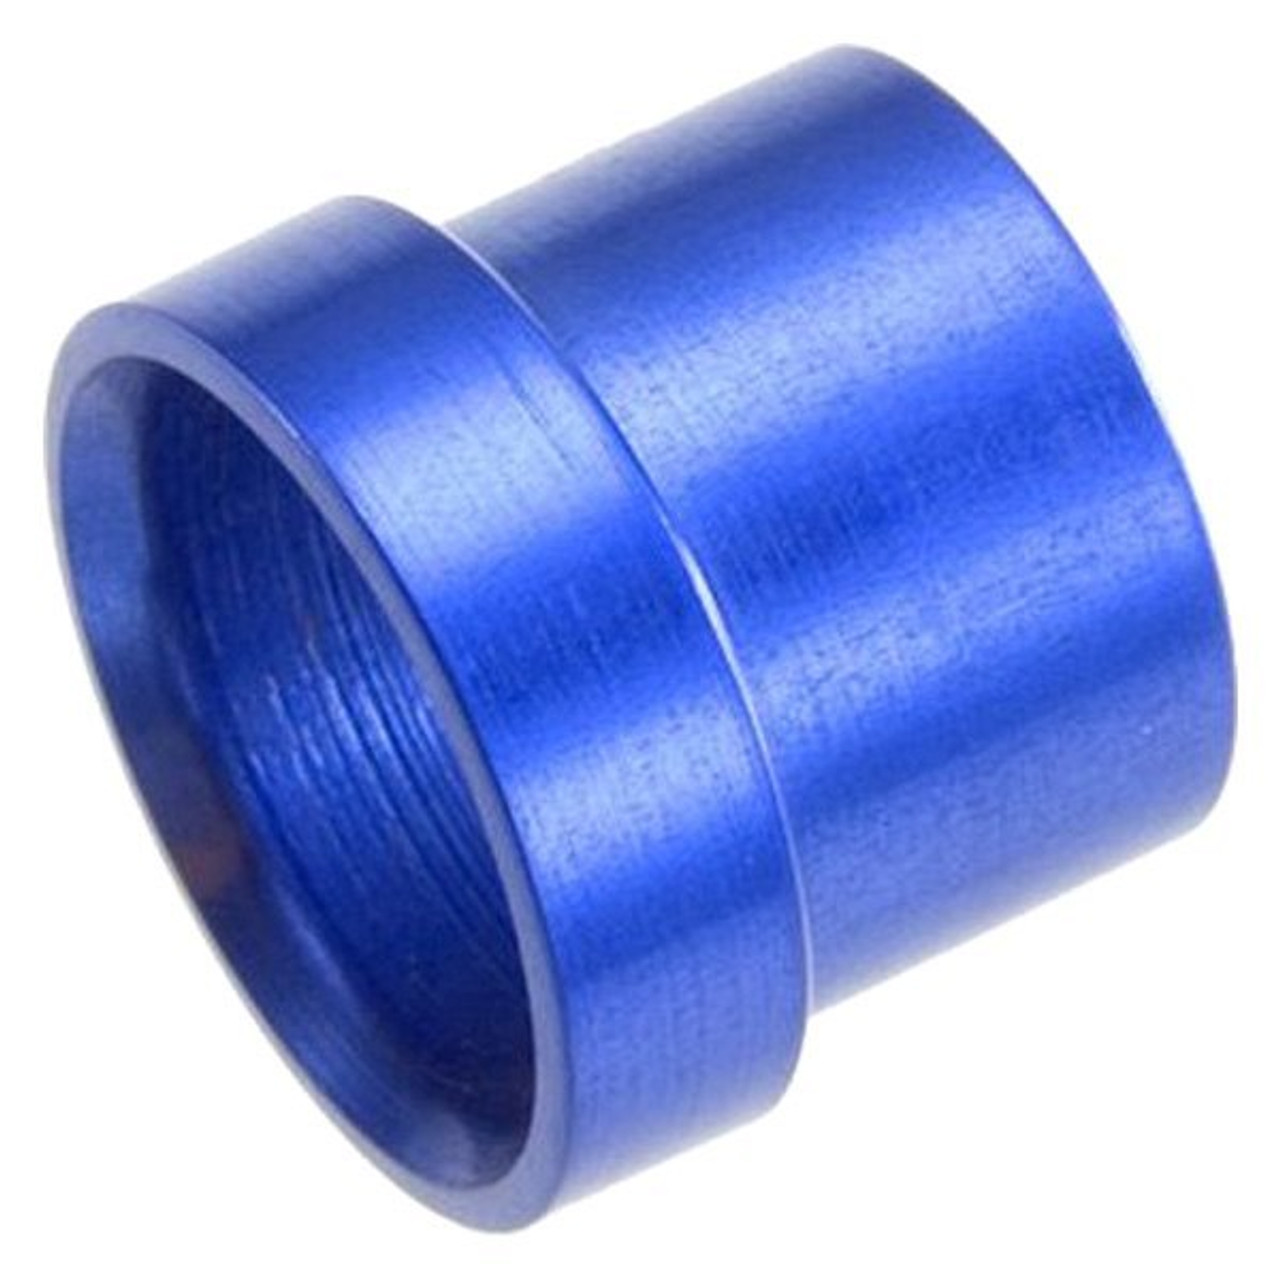 RHP819-06-1, Tube Sleeve  -06 aluminum tube sleeve - blue (use with an818-06